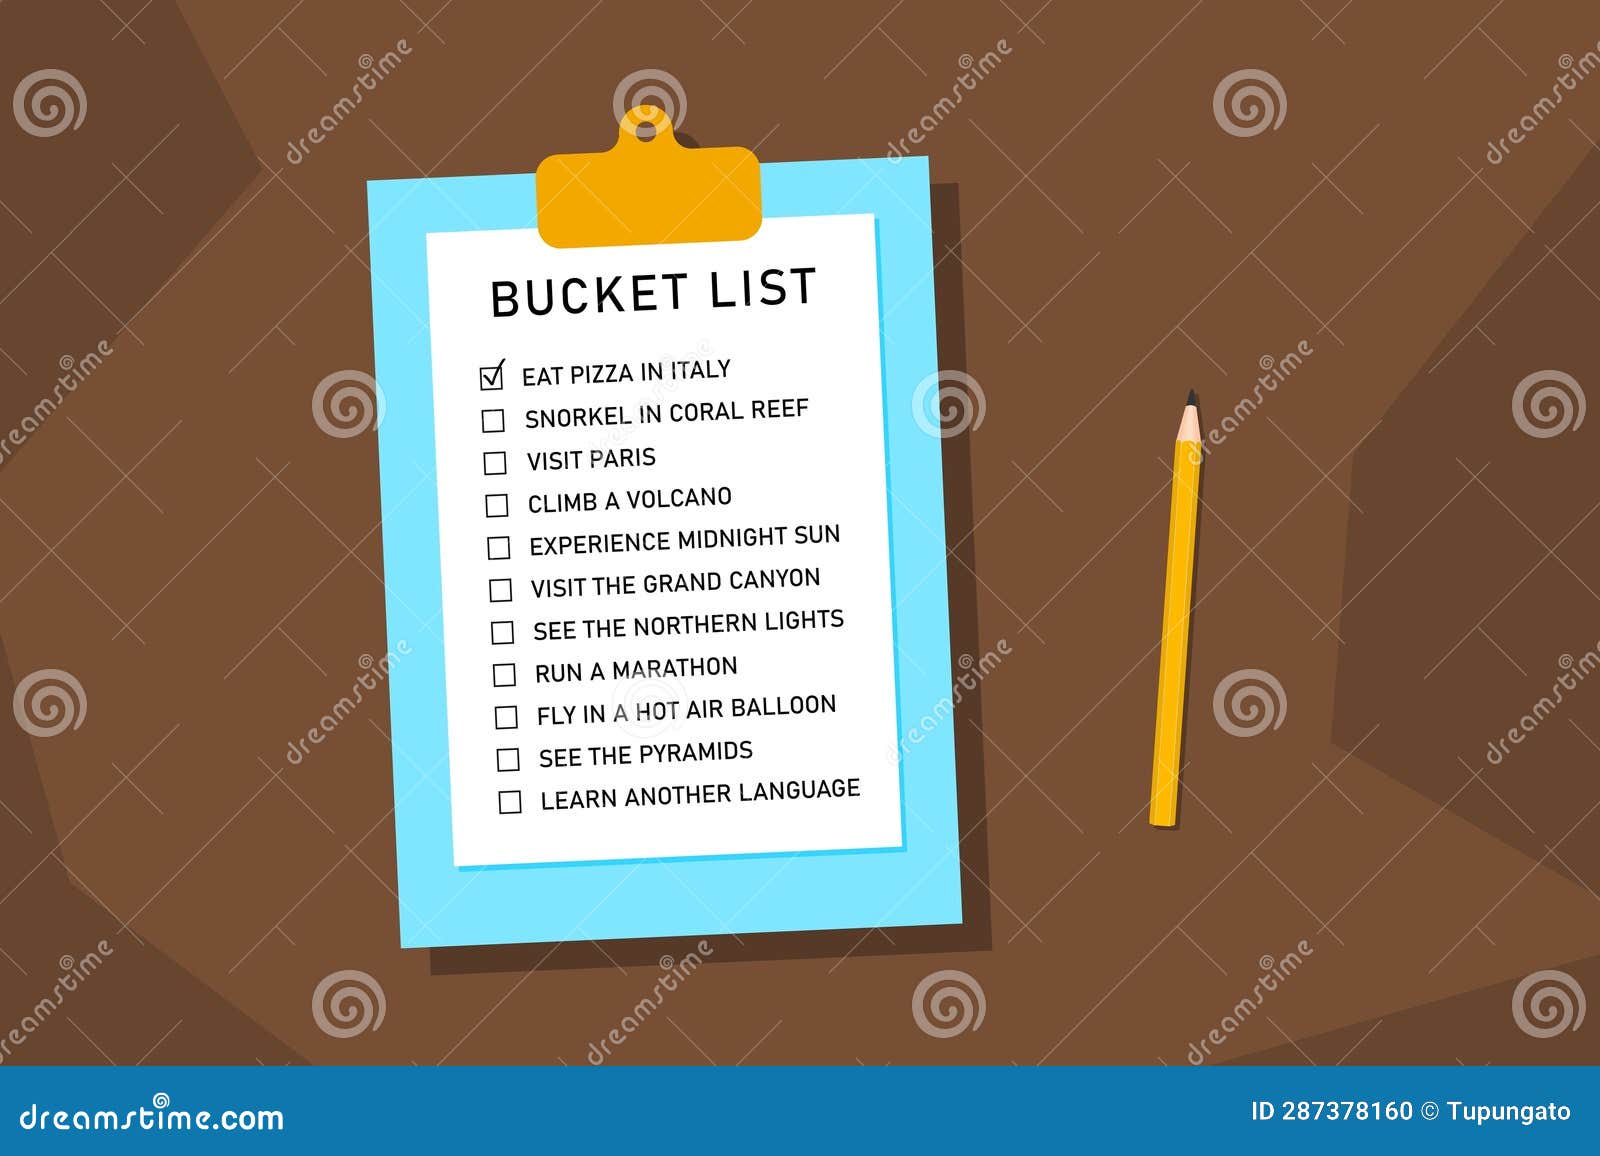 bucket list travel plans checklist